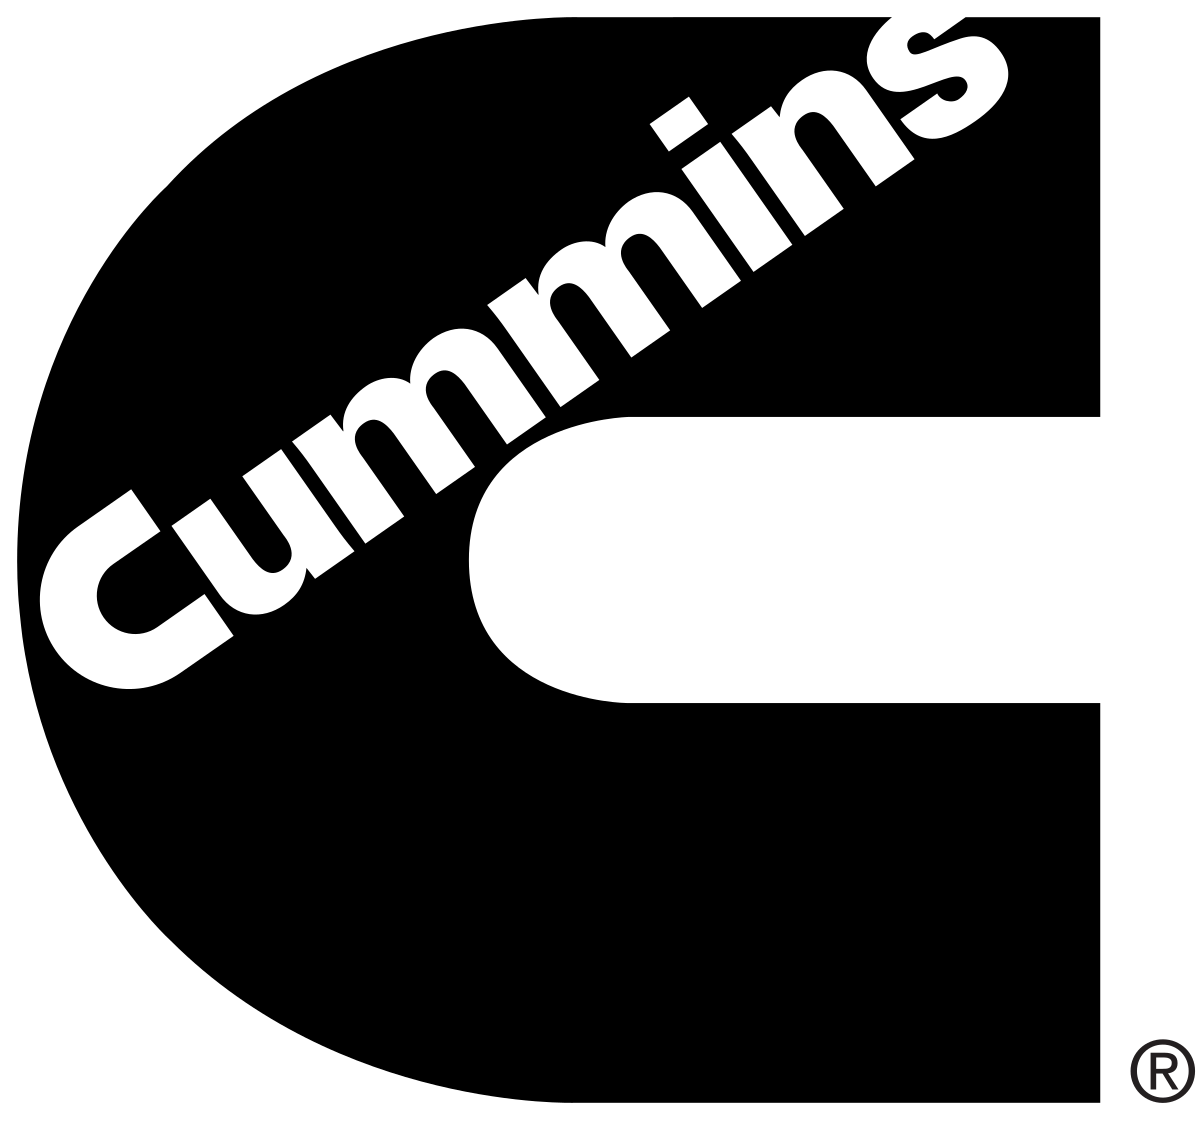 Cummins Turbo Diesel Logo - Cummins